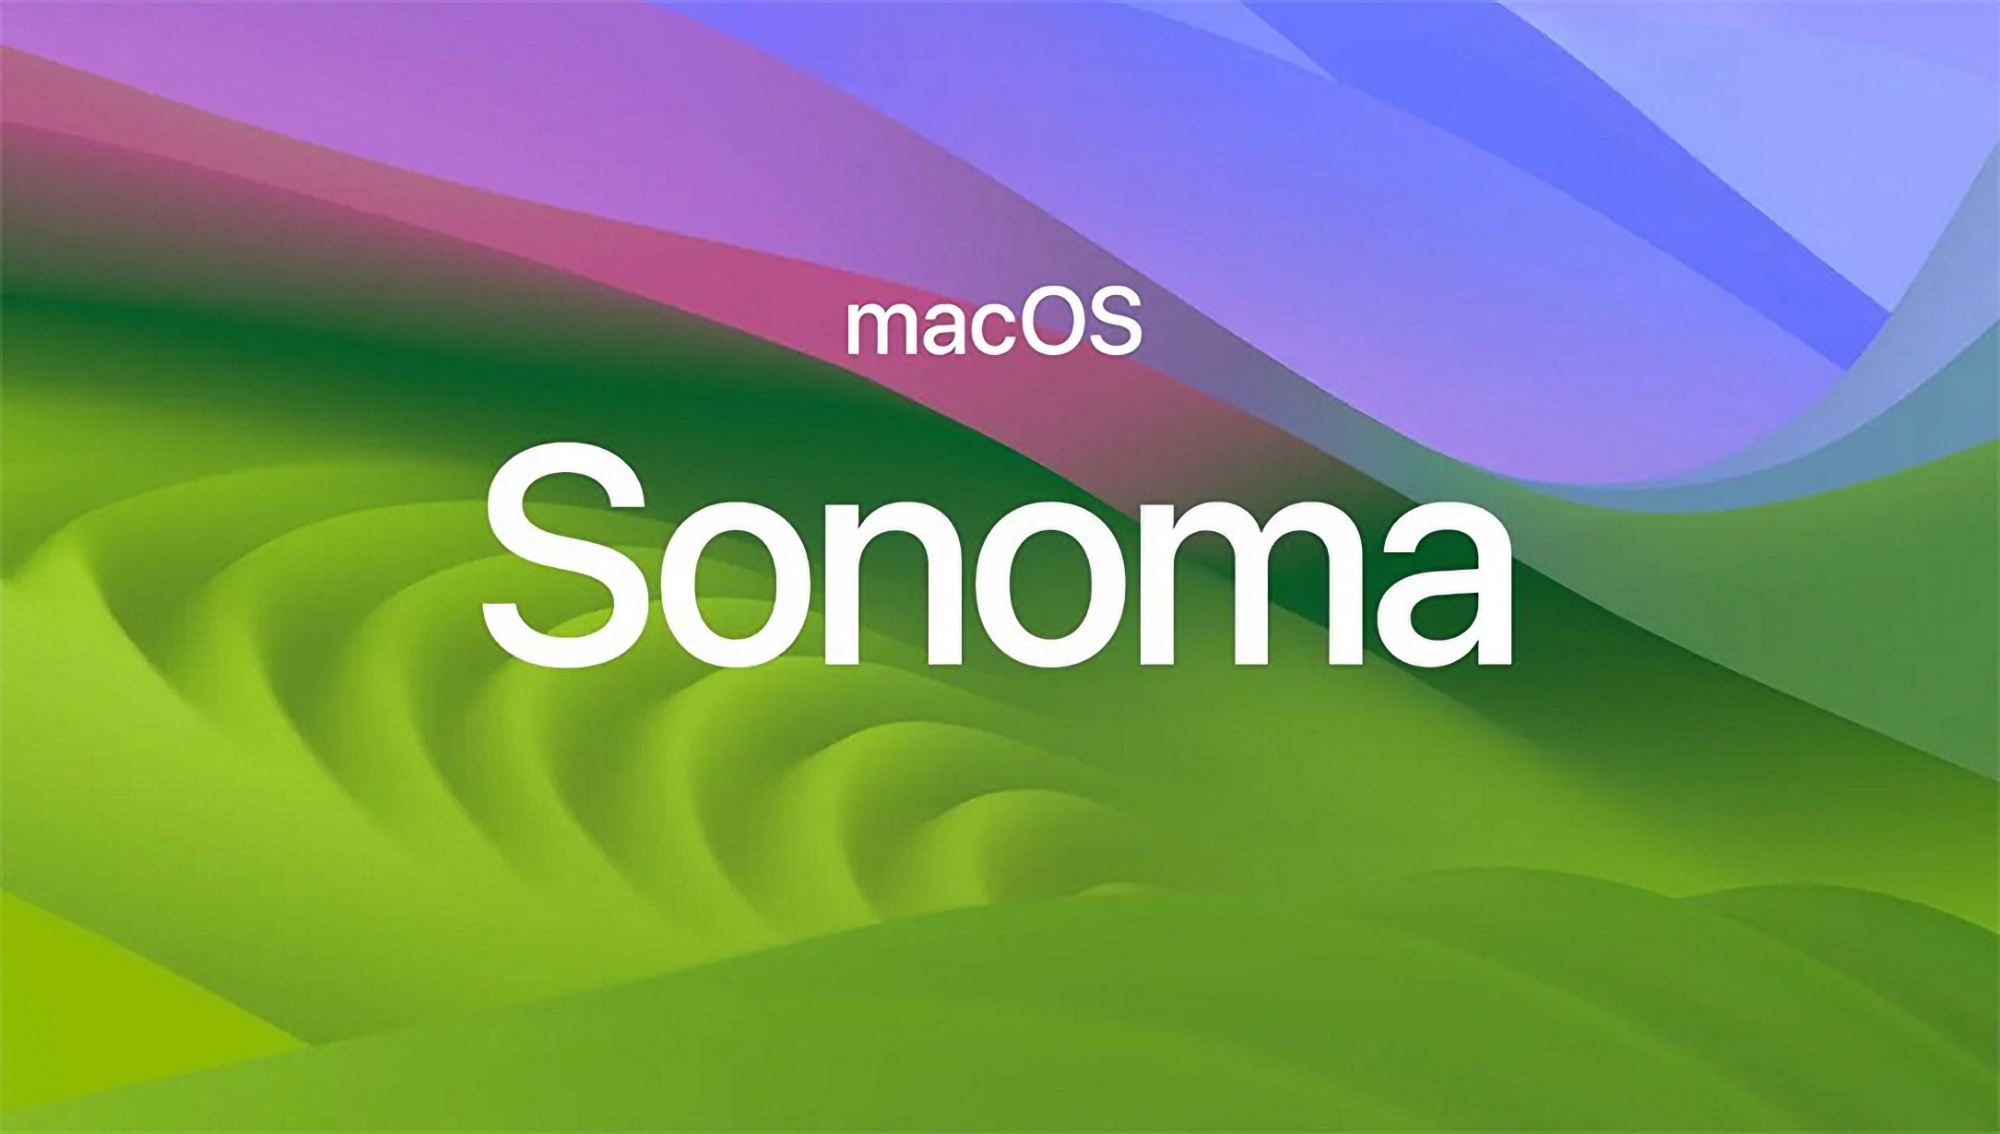 Nach iOS 17.5 Beta 2 und iPadOS 17.5 Beta 2: die zweite Beta von macOS Sonoma 14.5 ist veröffentlicht worden